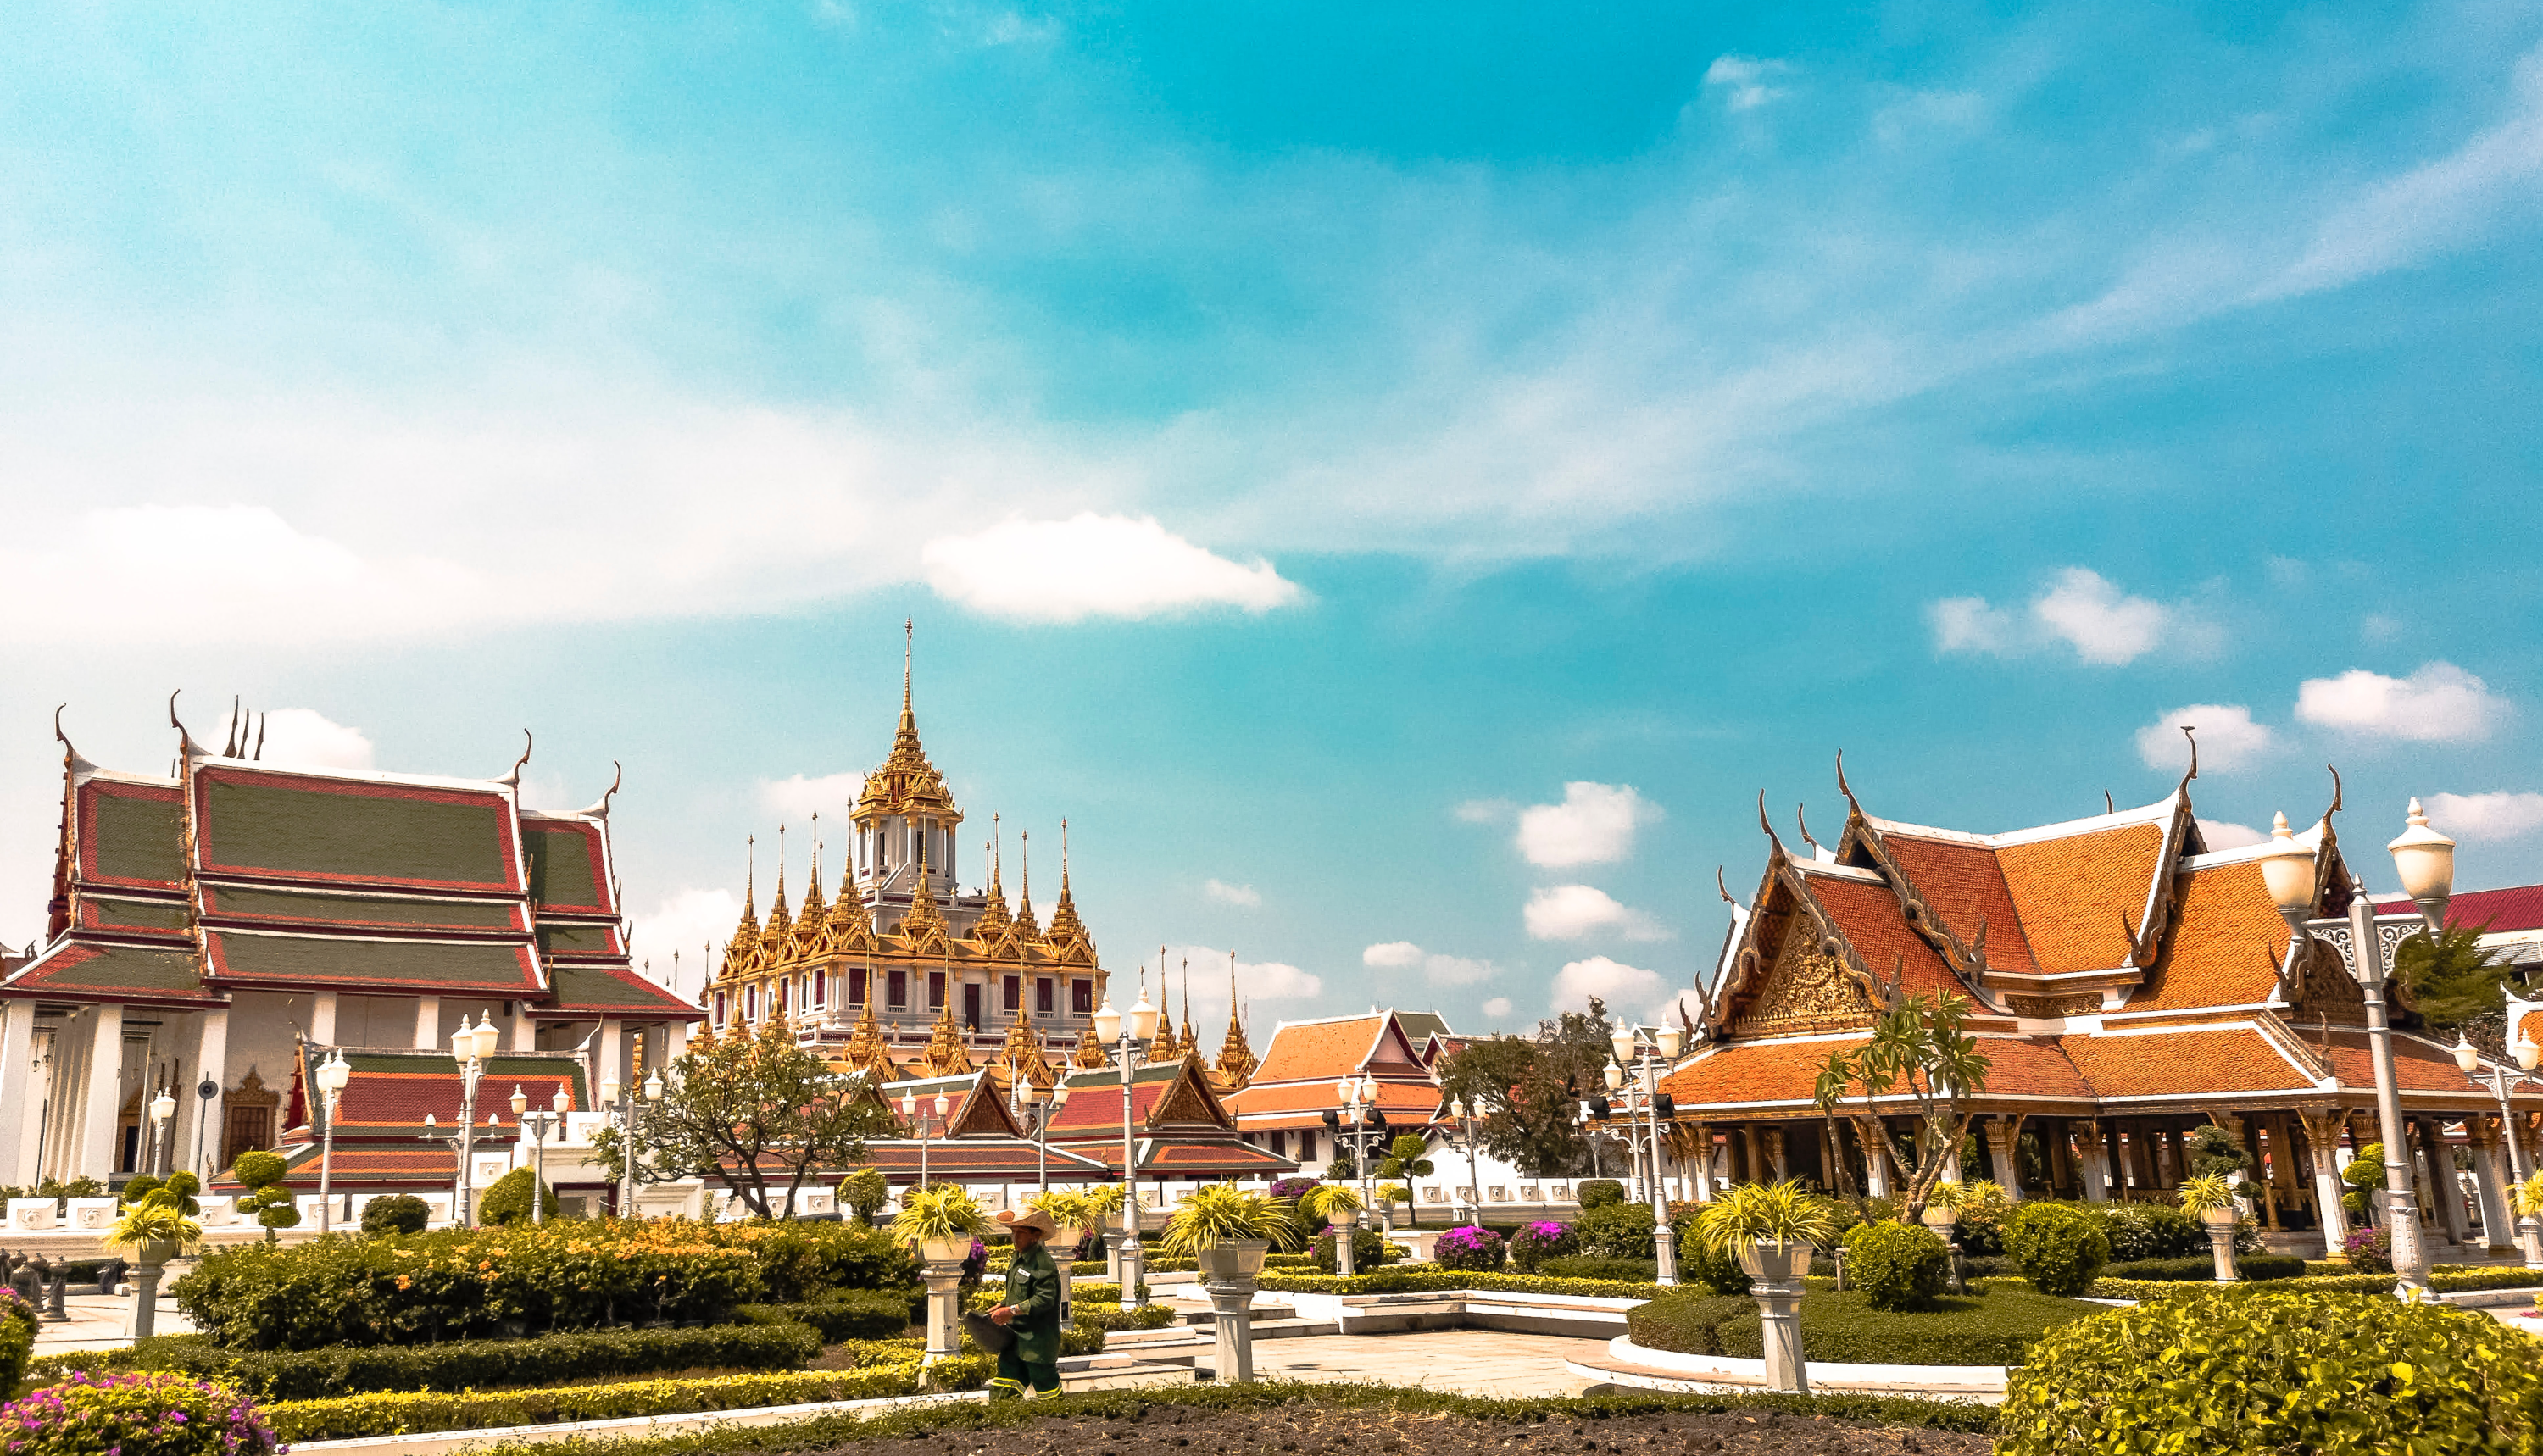 태국 방콕의 사원들이 모인 모습 맑은 하늘과 정원이 같이 보임